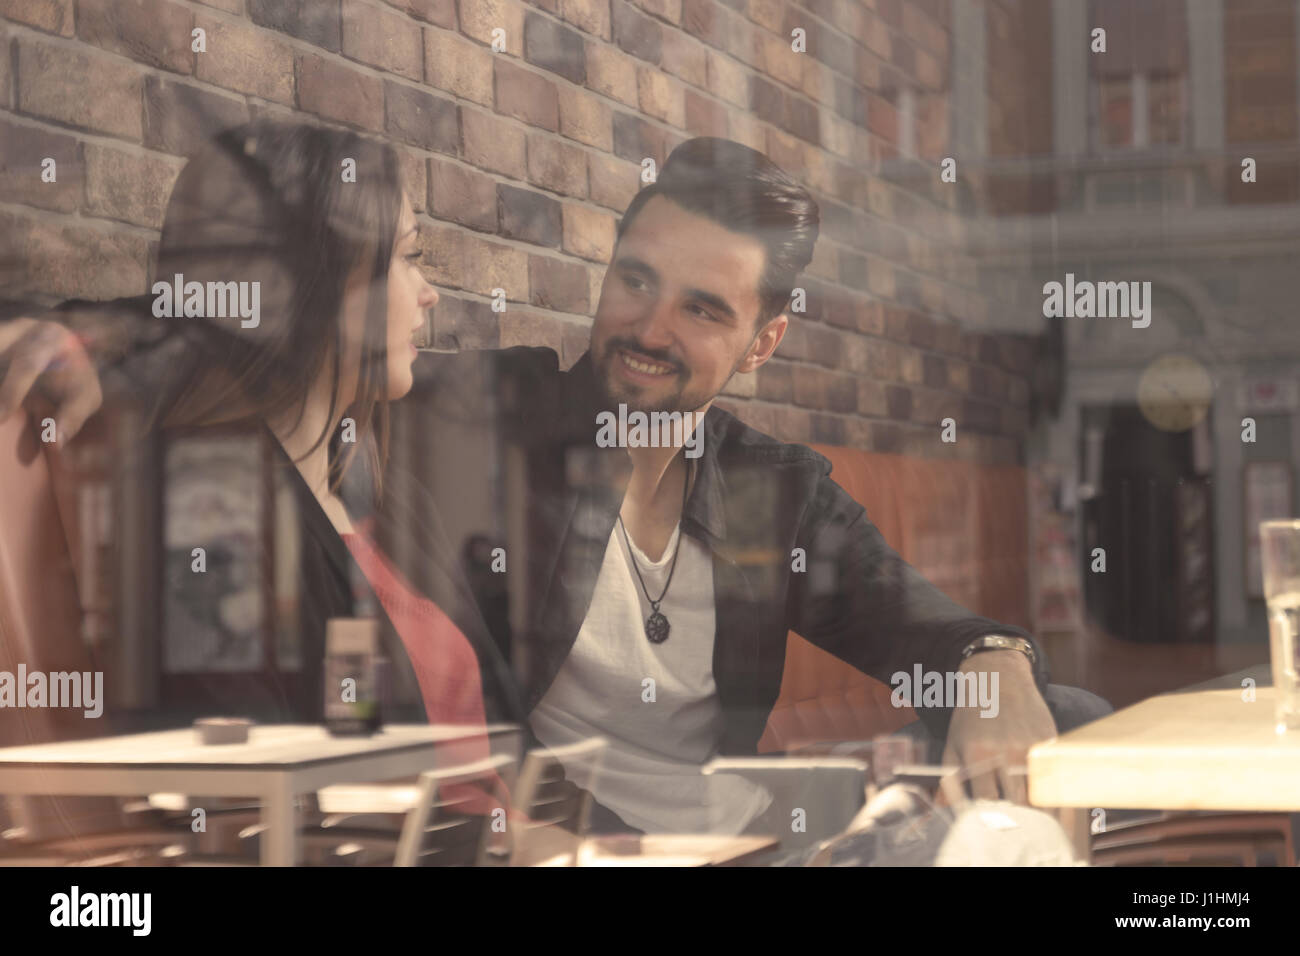 Café junge Erwachsene 20 s paar Freunde Frau Mann lächelnd Shooting dachte Fenster Reflexion im Gespräch Stockfoto